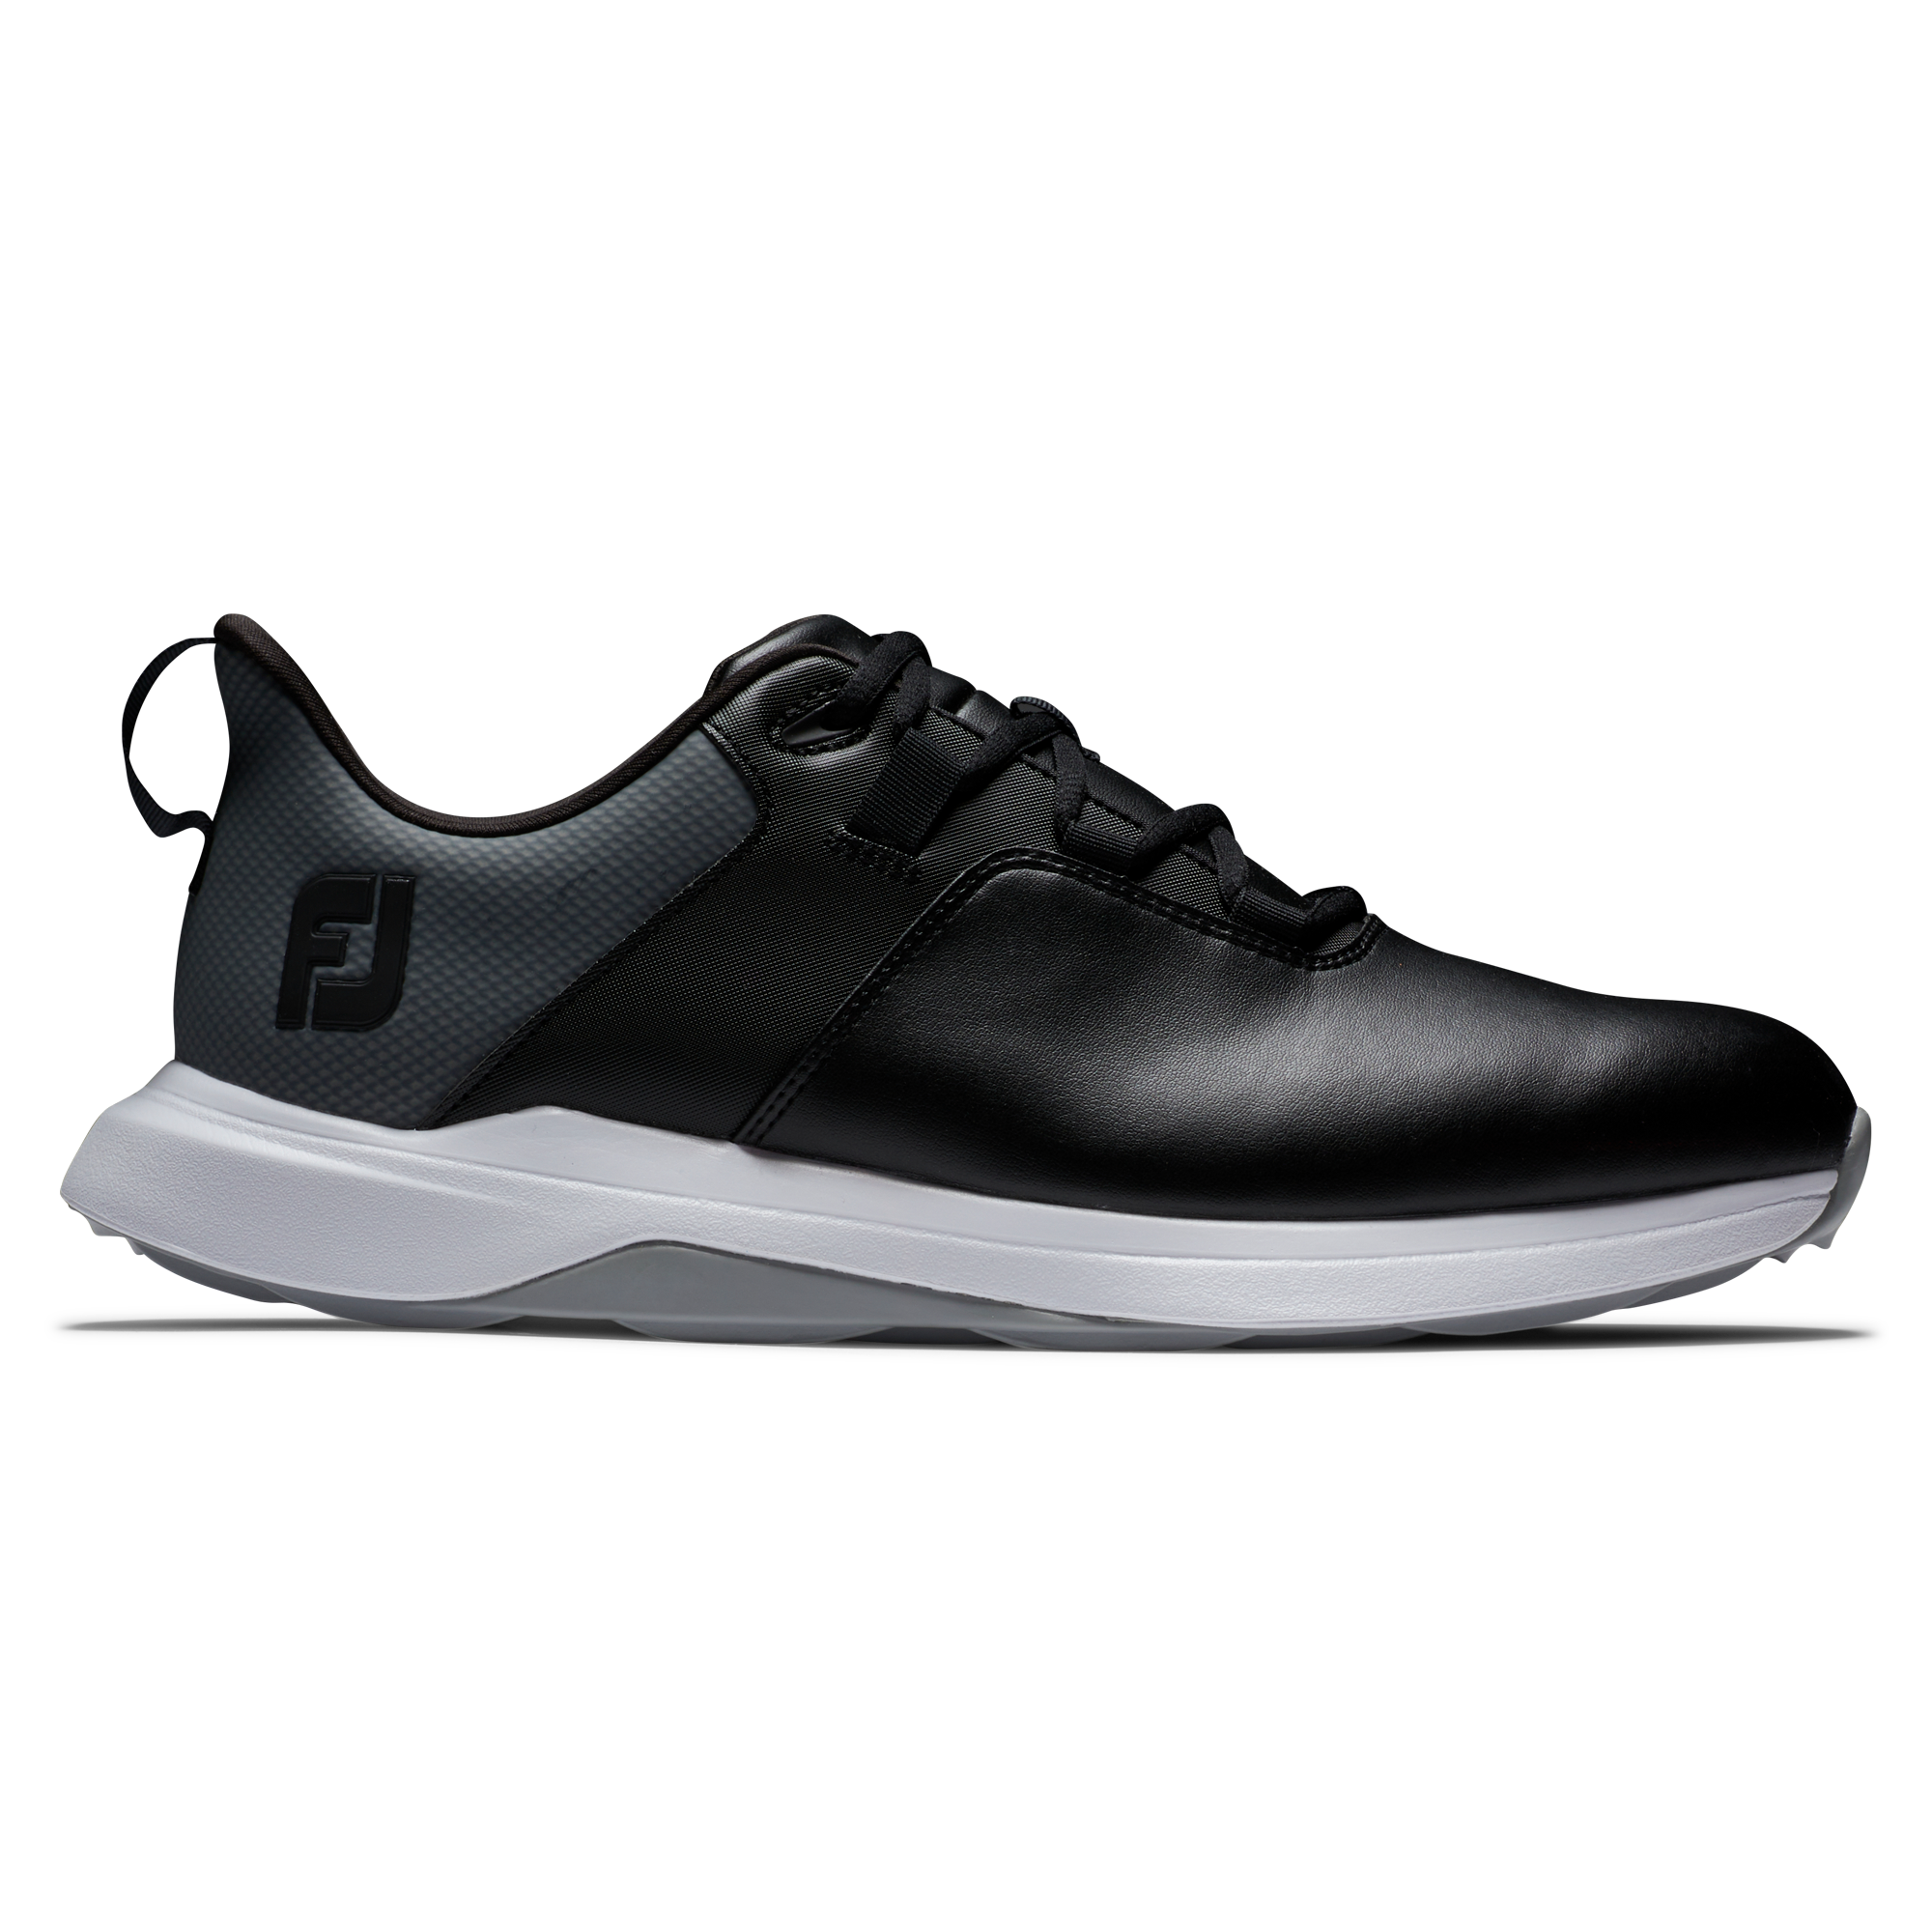 FootJoy ProLite pánské golfové boty, černé